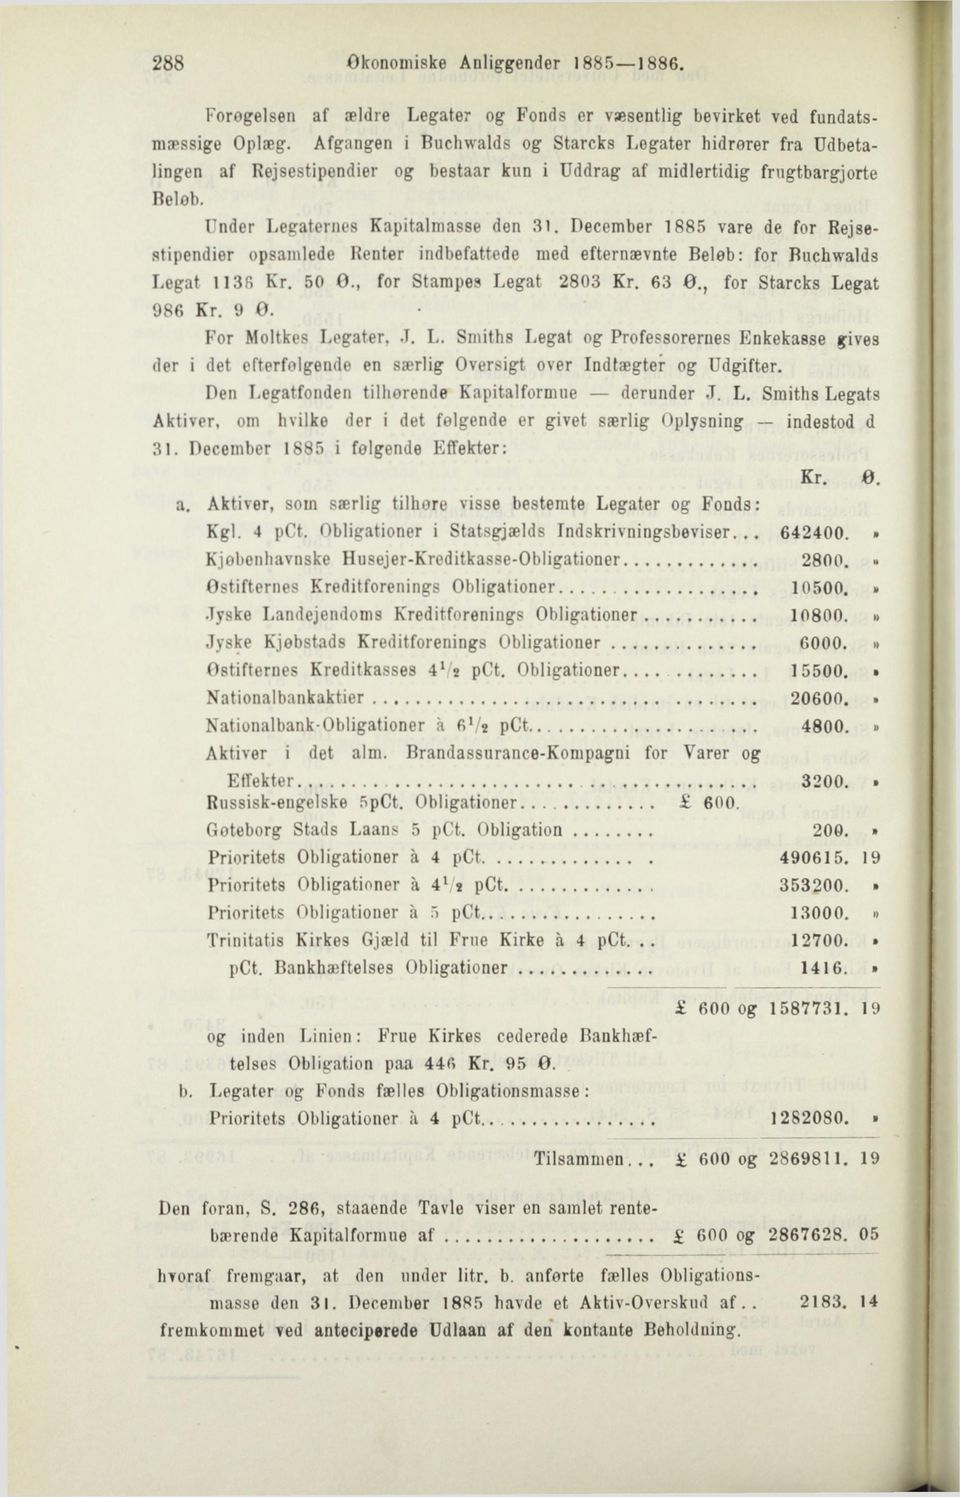 December 1885 vare de for Rejsestipendier opsamlede Renter indbefattede med efternævnte Beløb: for Buchwalds Legat 1138 Kr. 50 O., for Stampe9 Legat 2803 Kr. 63 O., for Starcks Legat 986 Kr. 9 0.